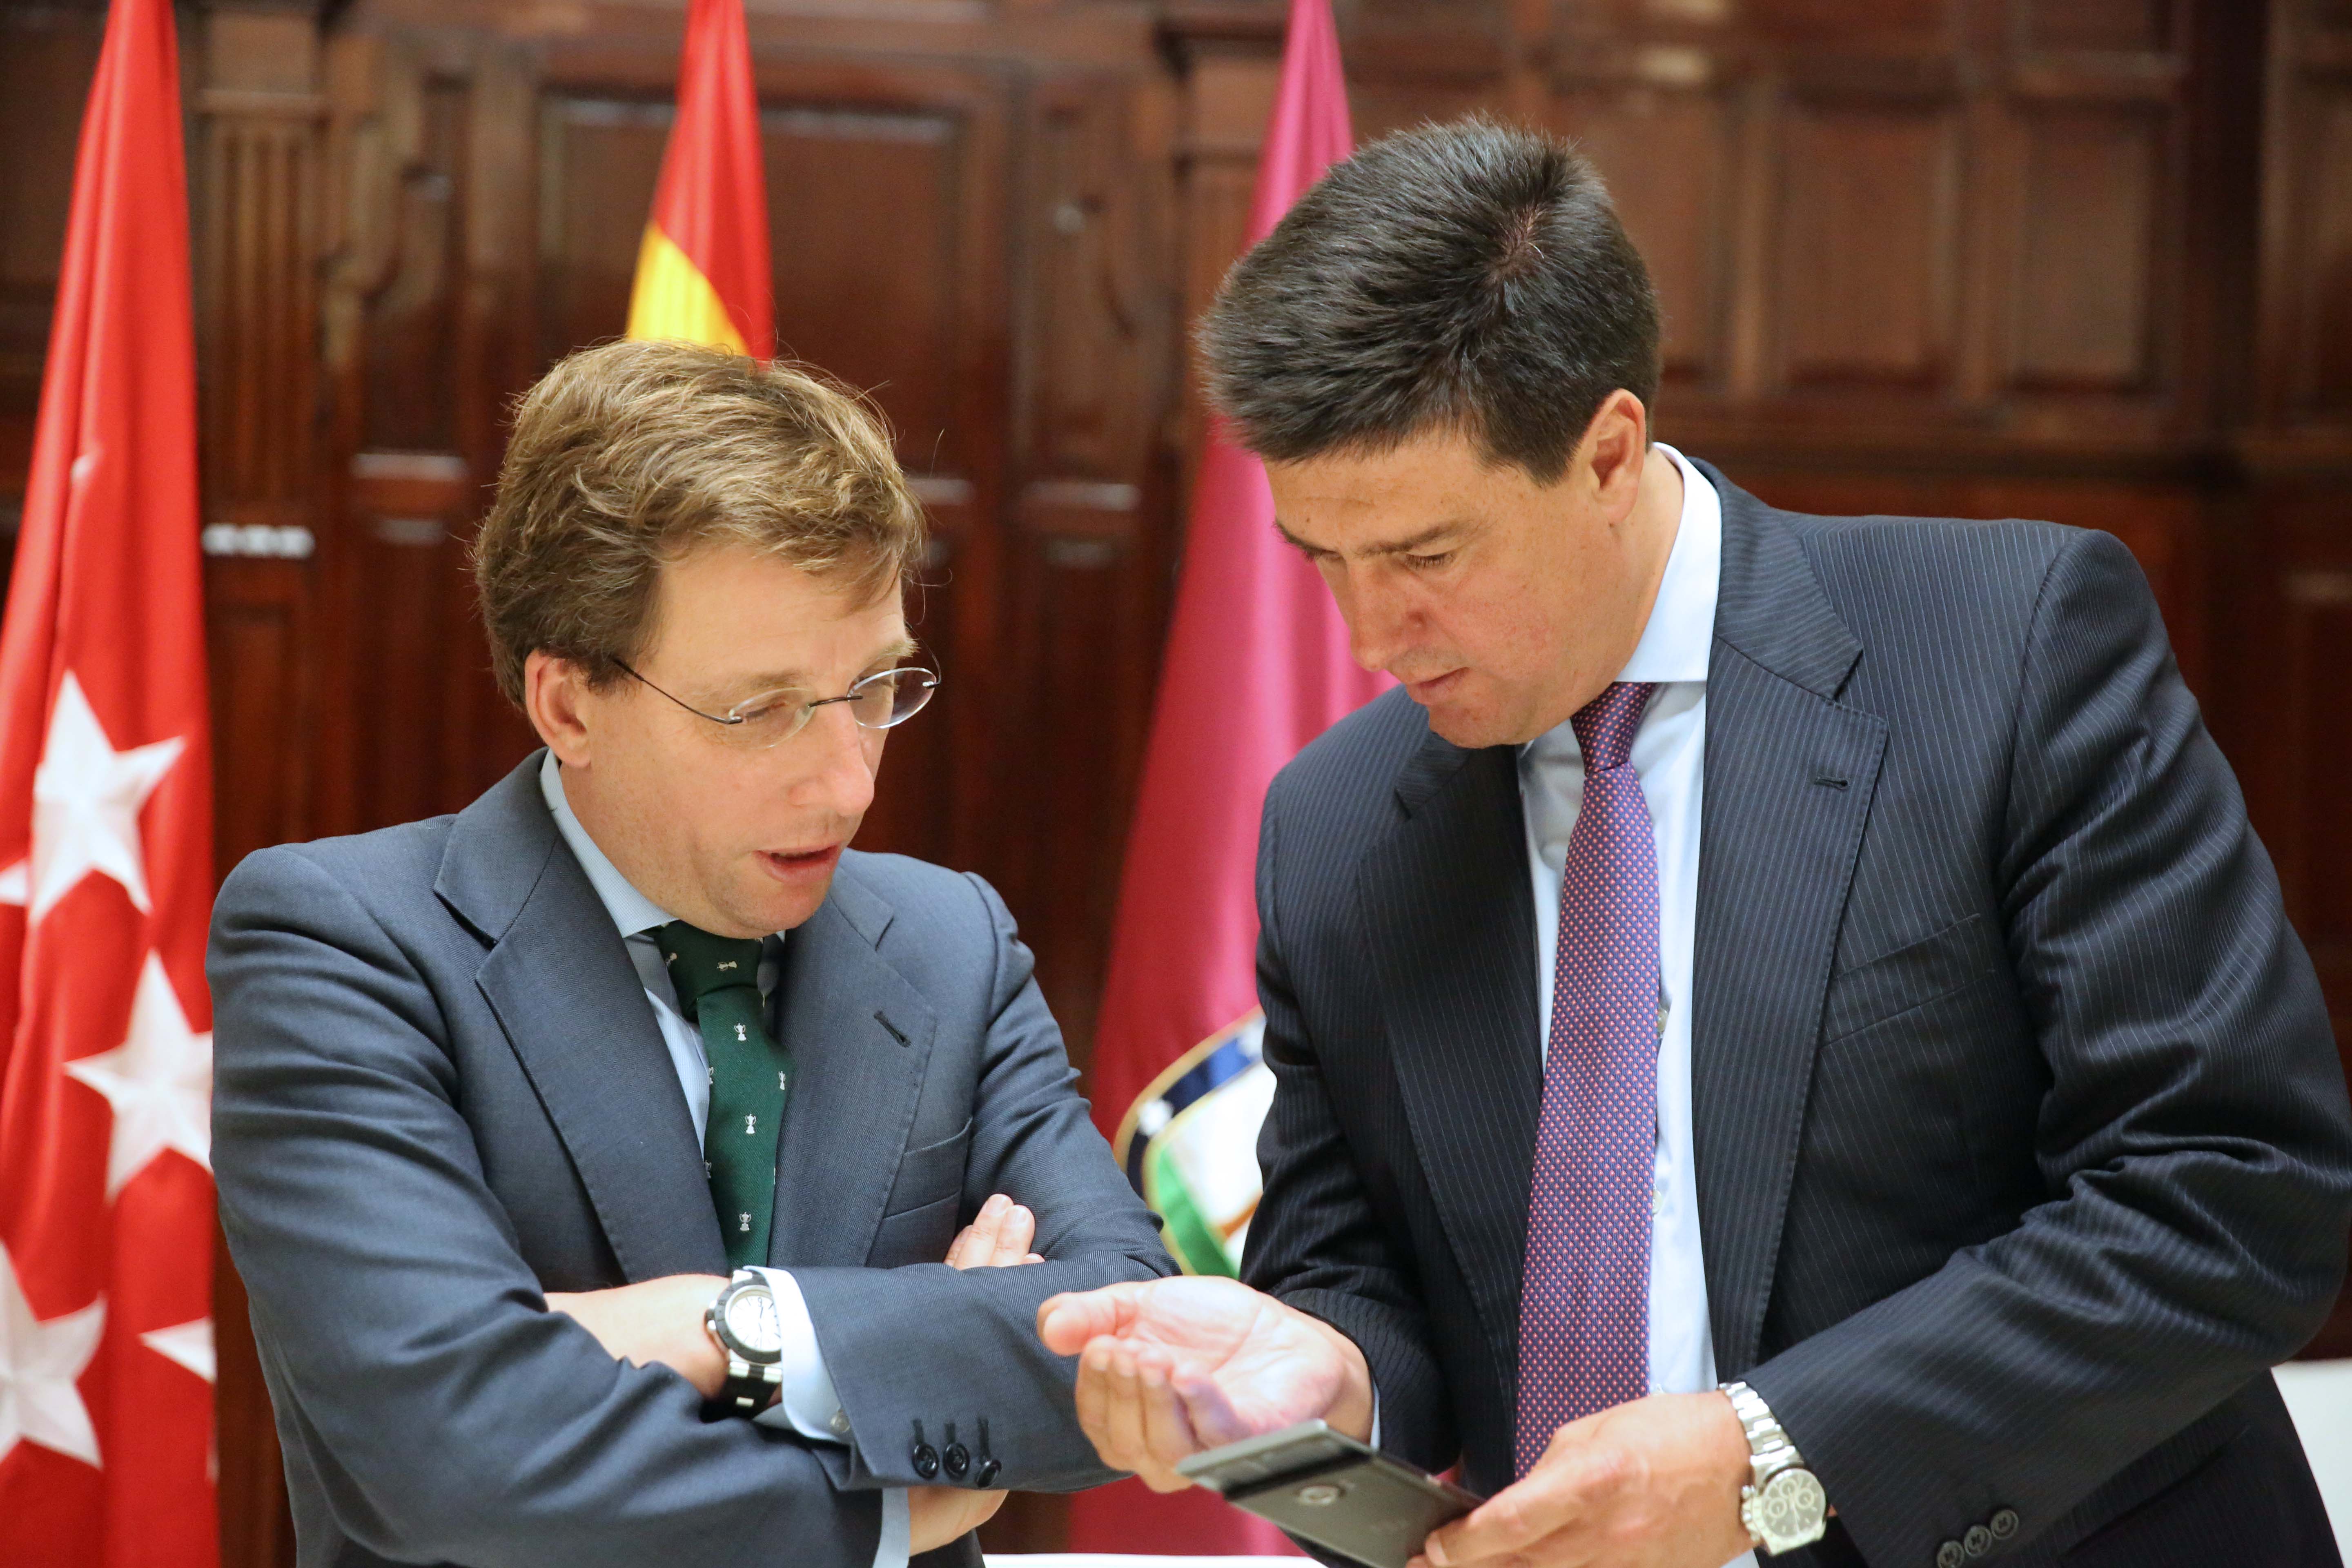 El alcalde de Madrid, José Luis Martínez-Almeida y el Consejero Delegado de MERLIN Properties, Ismael Clemente, durante la firma del convenio